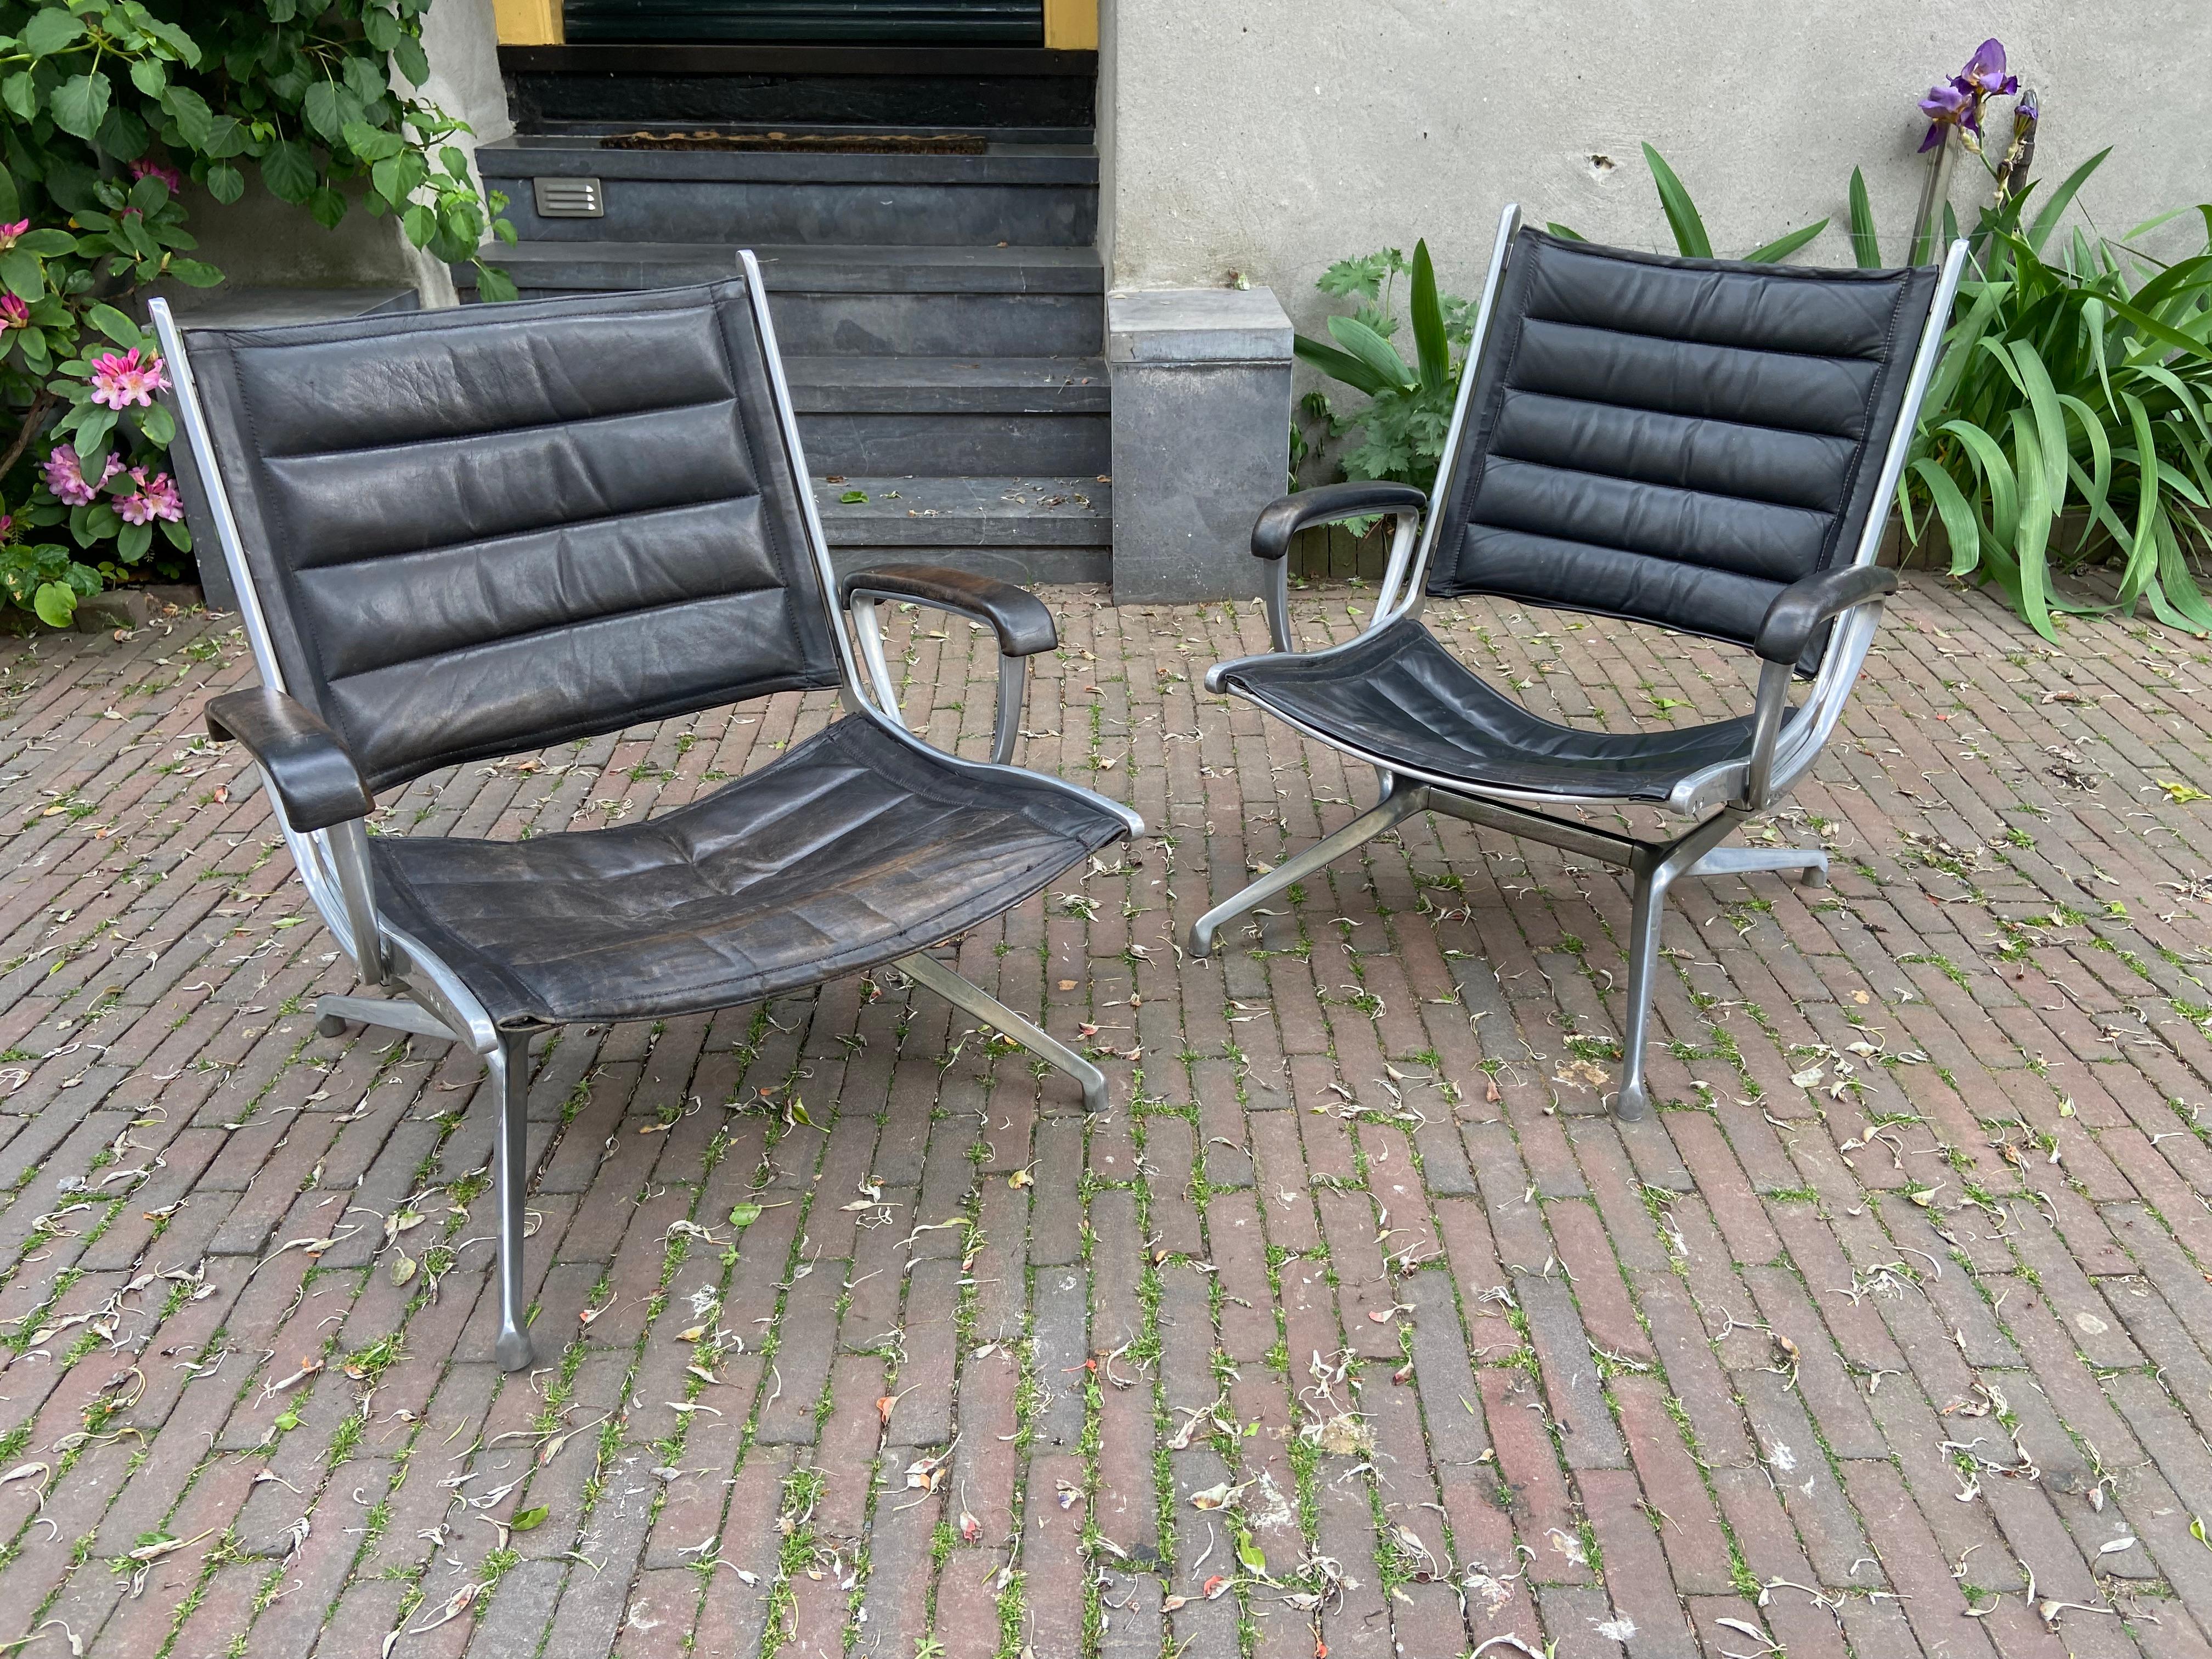 Paire de fauteuils de Paul Tuttle pour Strässle International, Suisse, années 1960.
Montures en métal avec cuir noir, en bon état vintage.
Deux tailles : une pour la femme et une pour l'homme.